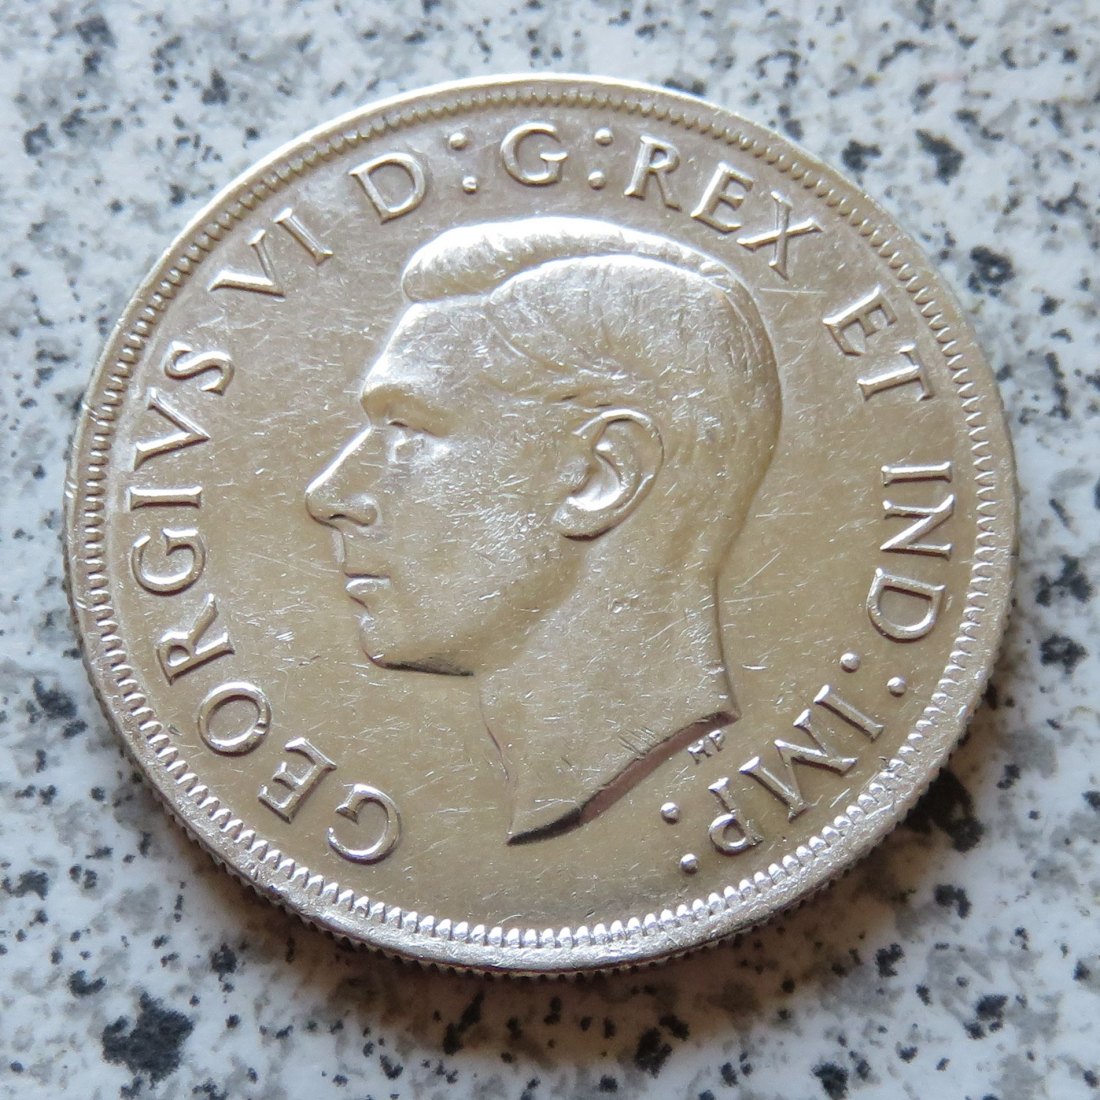  Canada 1 Dollar 1938   